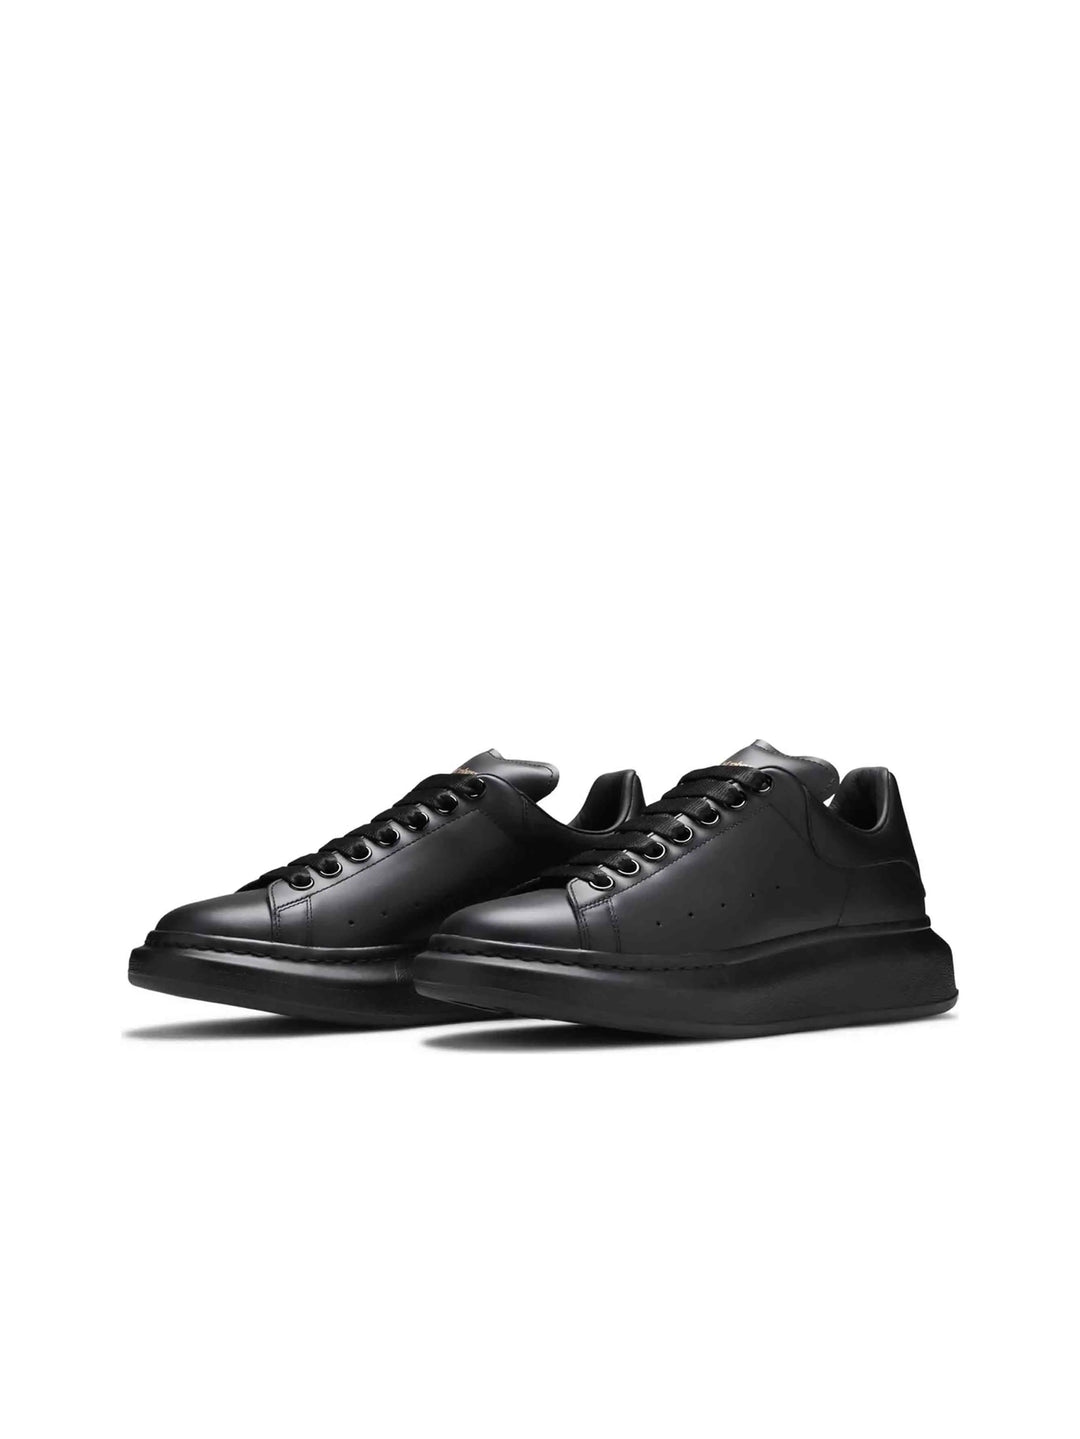 Alexander Mcqueen Oversized Black Sneakers - Prior